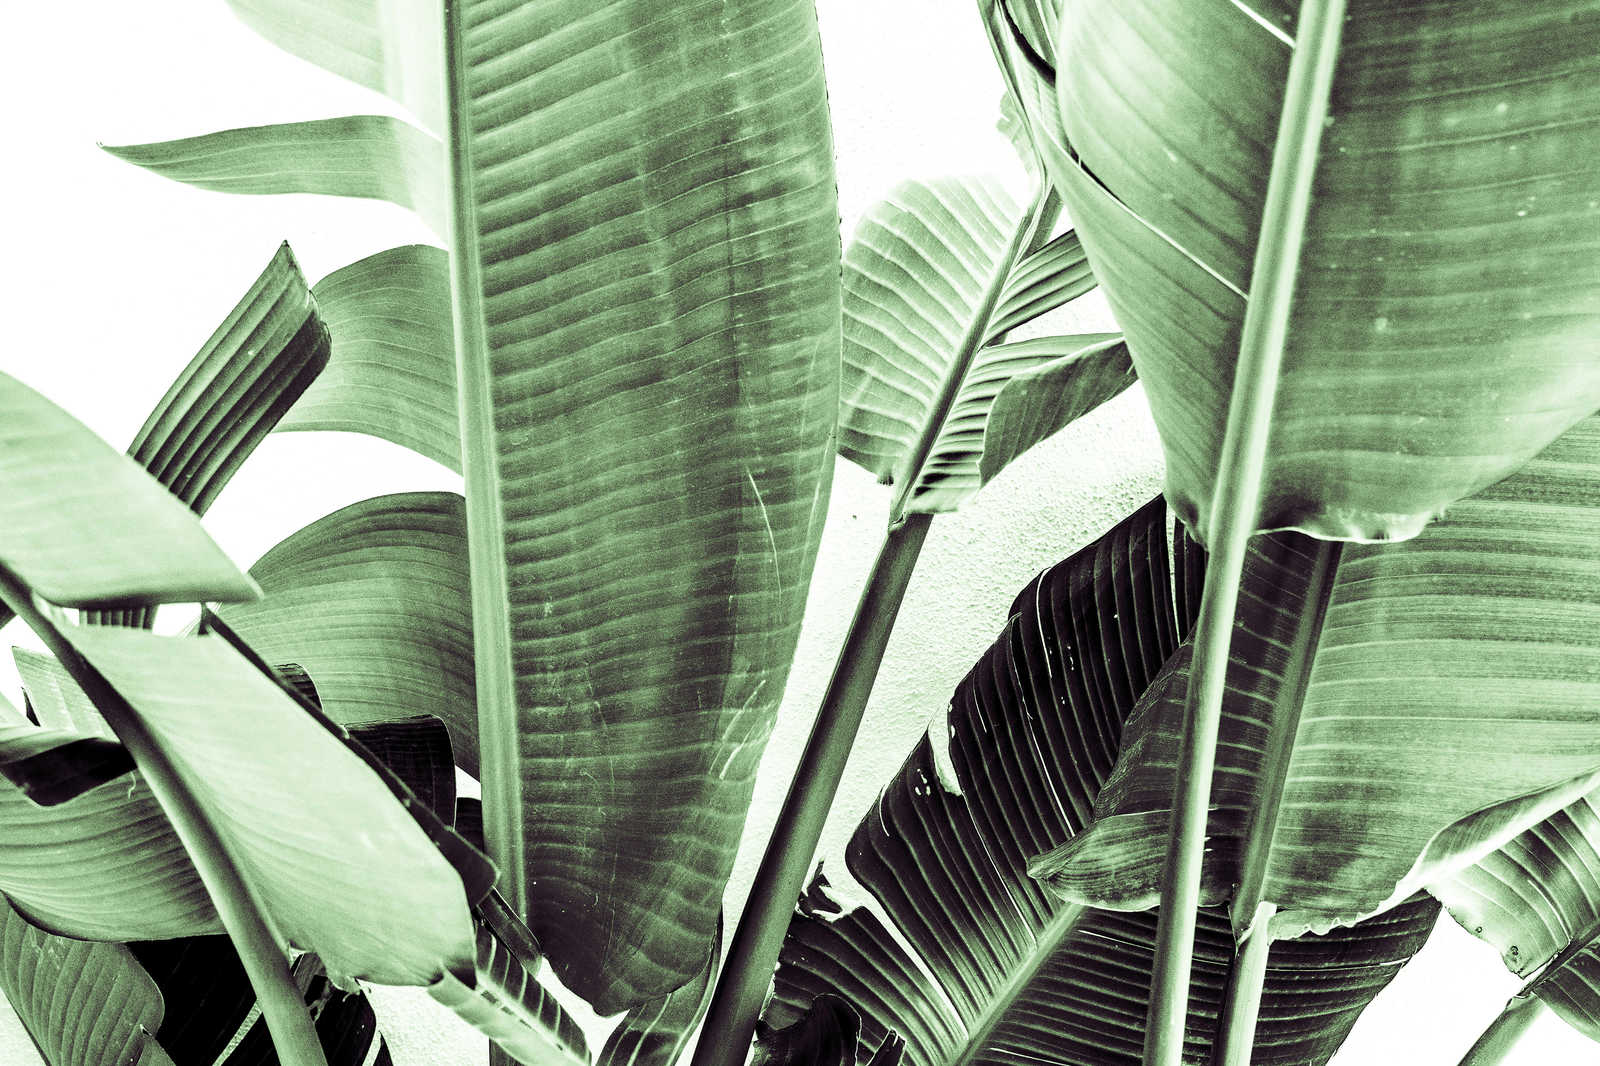             Cuadro Detalle de hojas de palmera - 0,90 m x 0,60 m
        